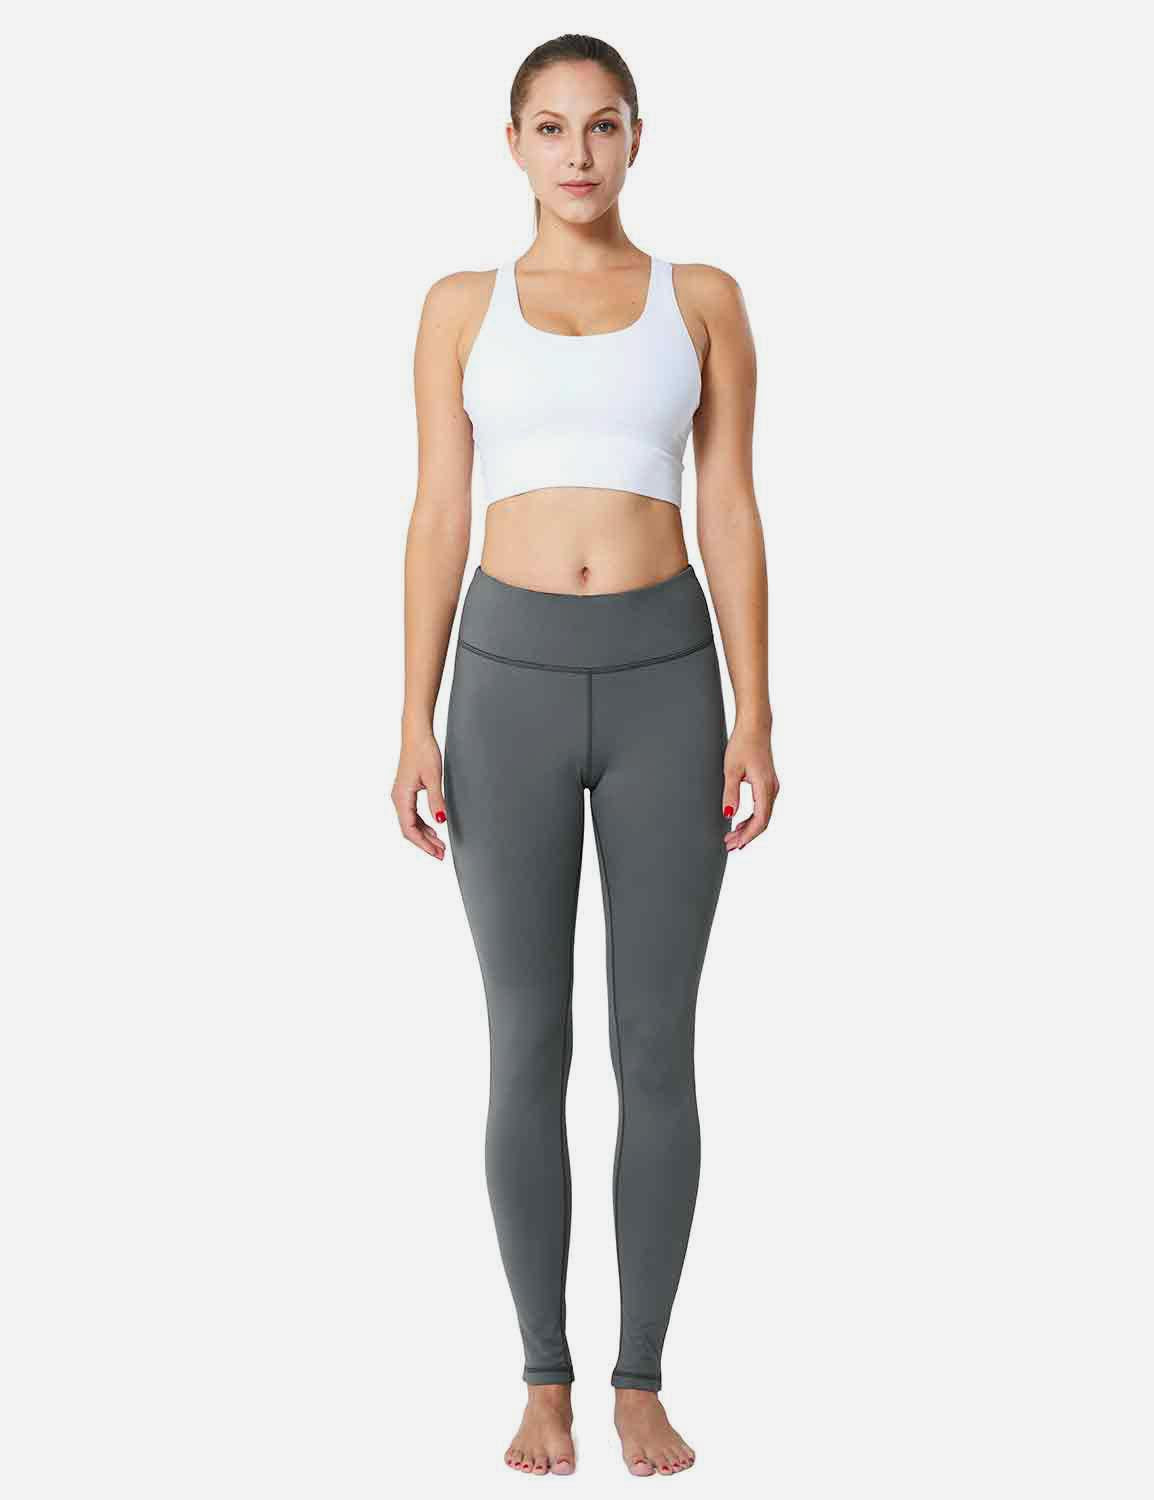 Baleaf Women's Mid-Rise Fleece Lined Basic Yoga & Workout Leggings abh018 Gray Full